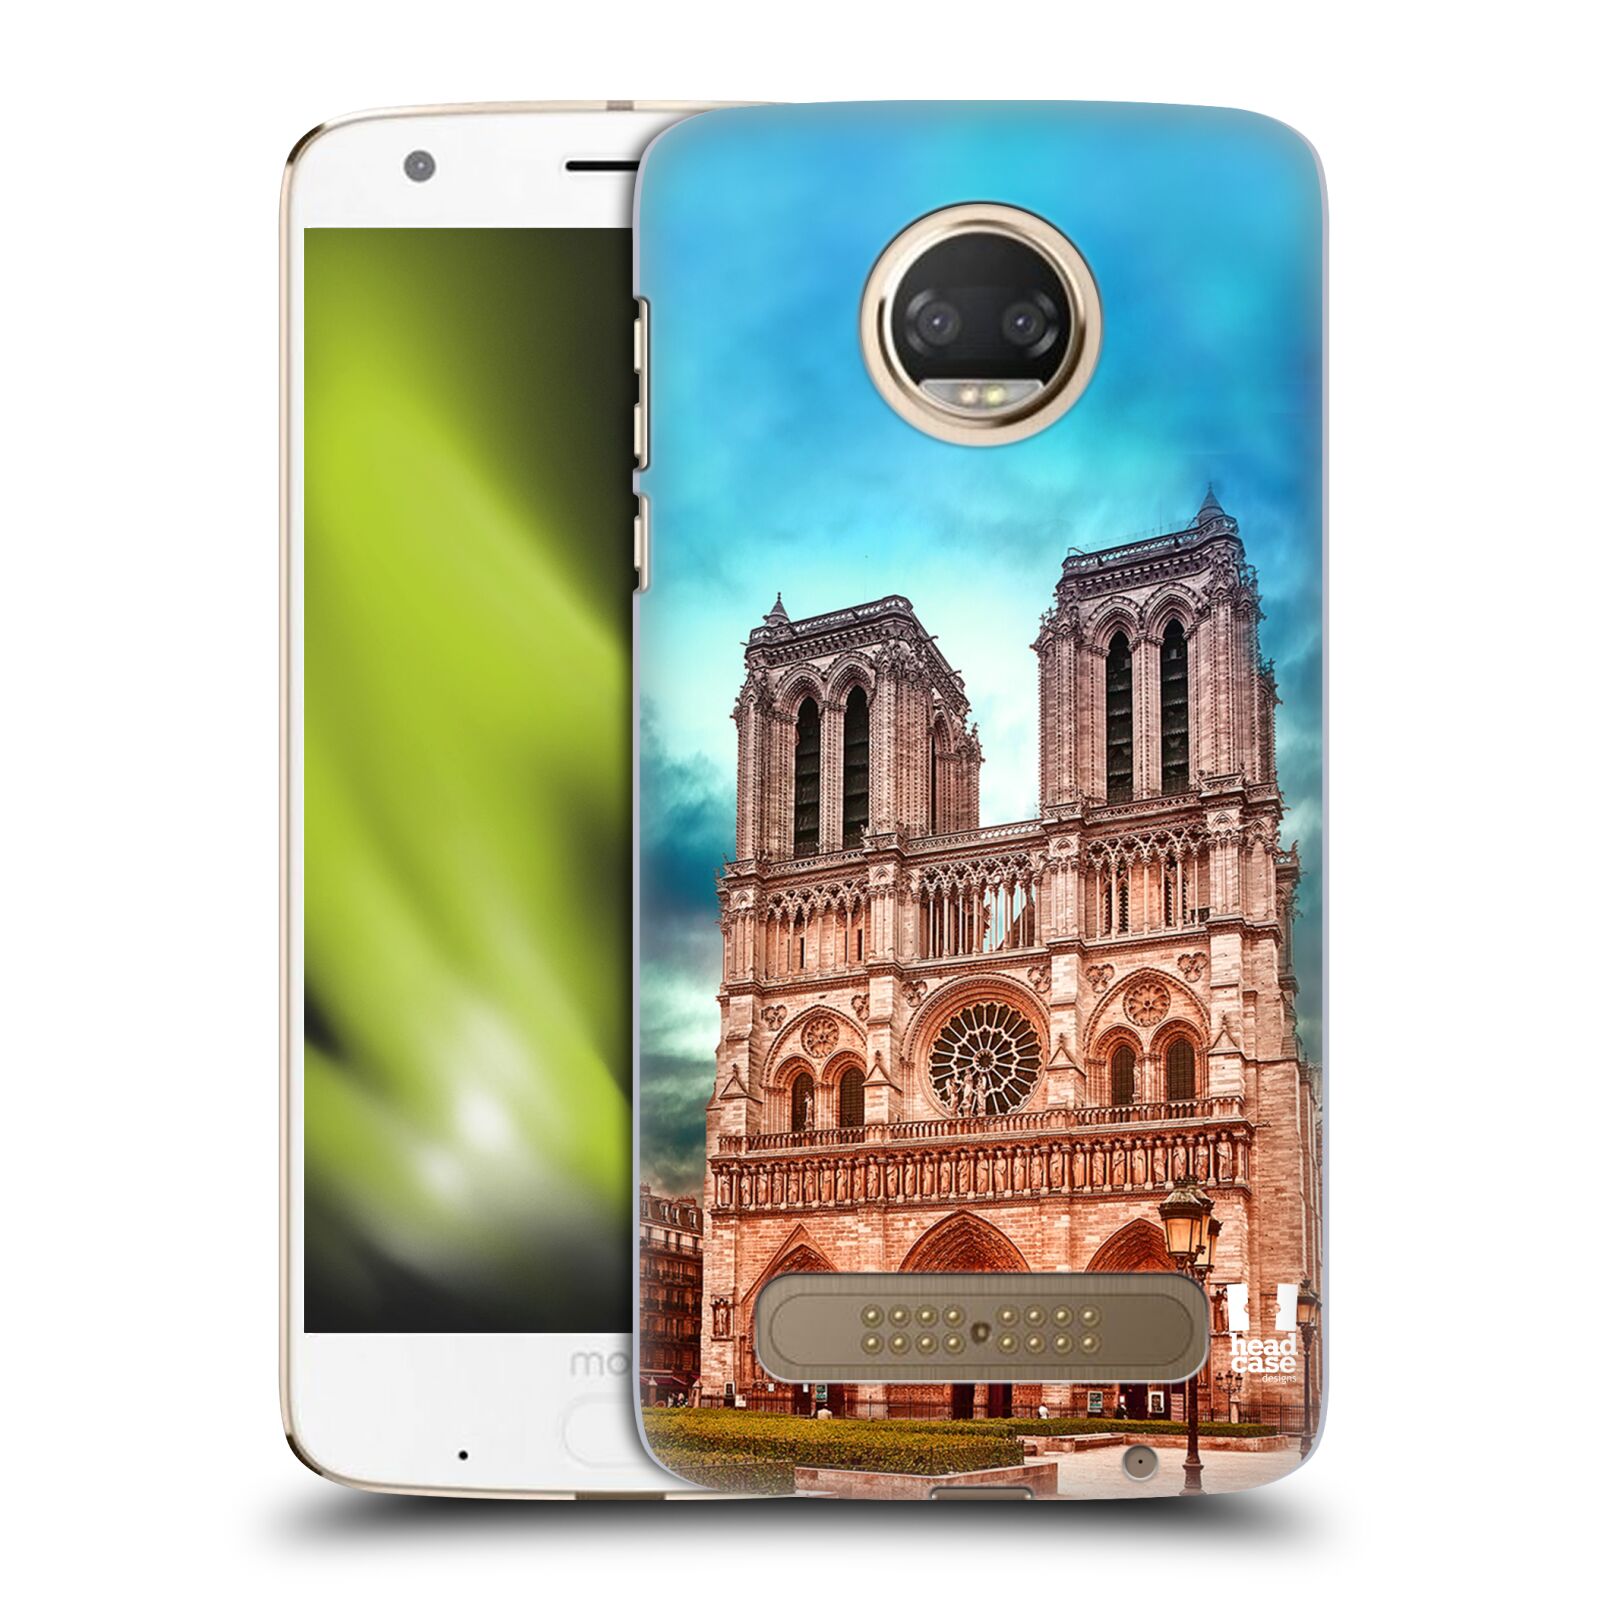 Pouzdro na mobil Motorola Moto Z2 PLAY - HEAD CASE - historická místa katedrála Notre Dame